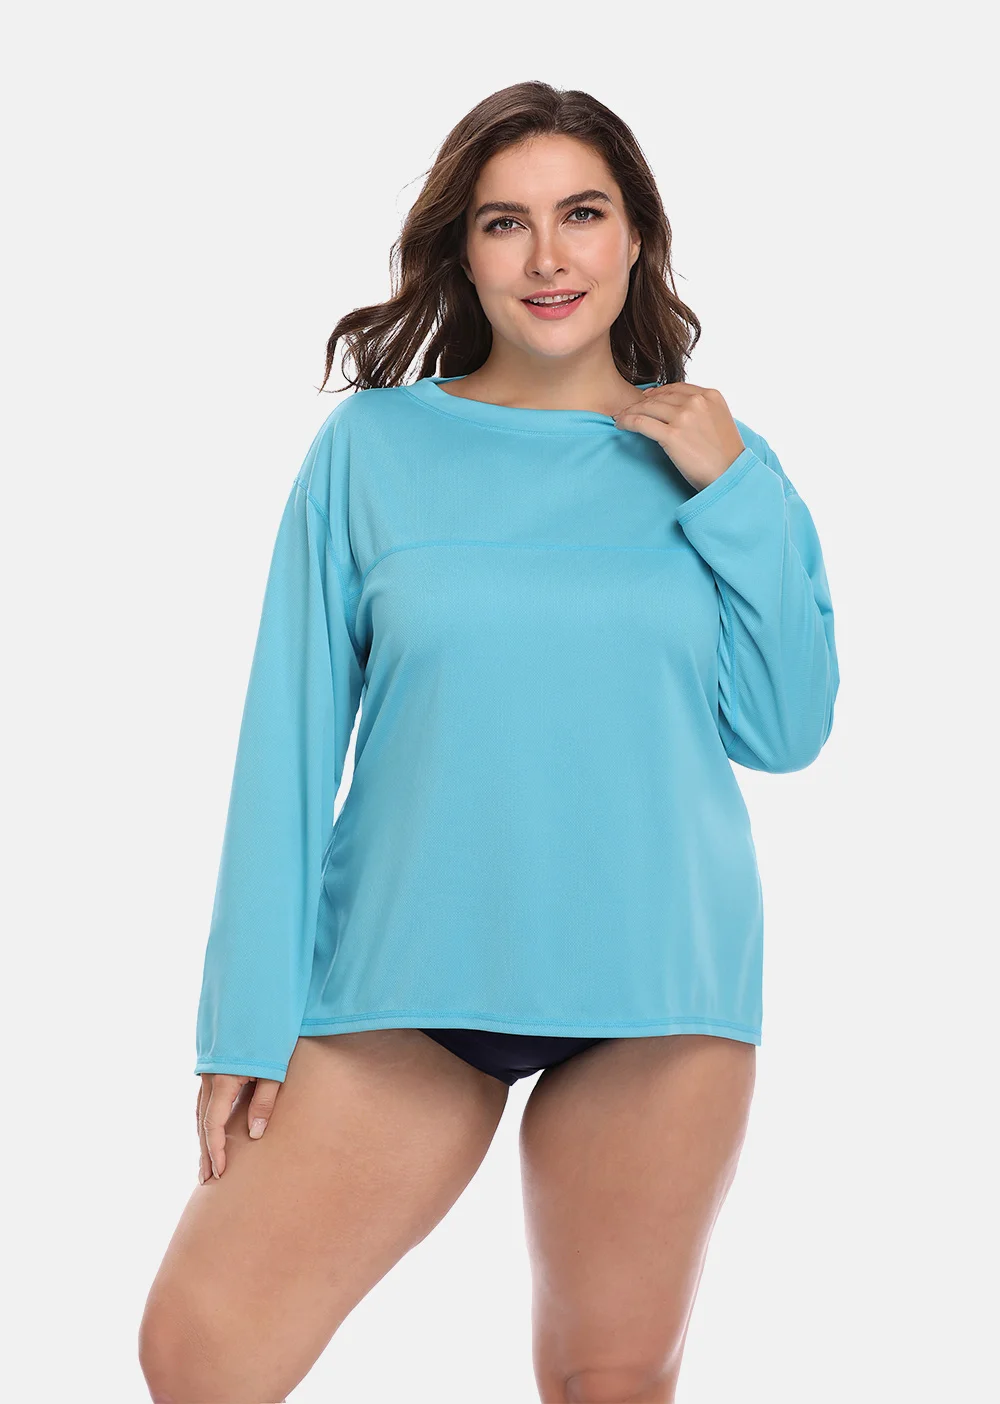 Long o женский длинный гидрокостюм Рашгард рубашки UPF 50+ женский s плюс размер купальники УФ-защита Рашгард пляжная одежда